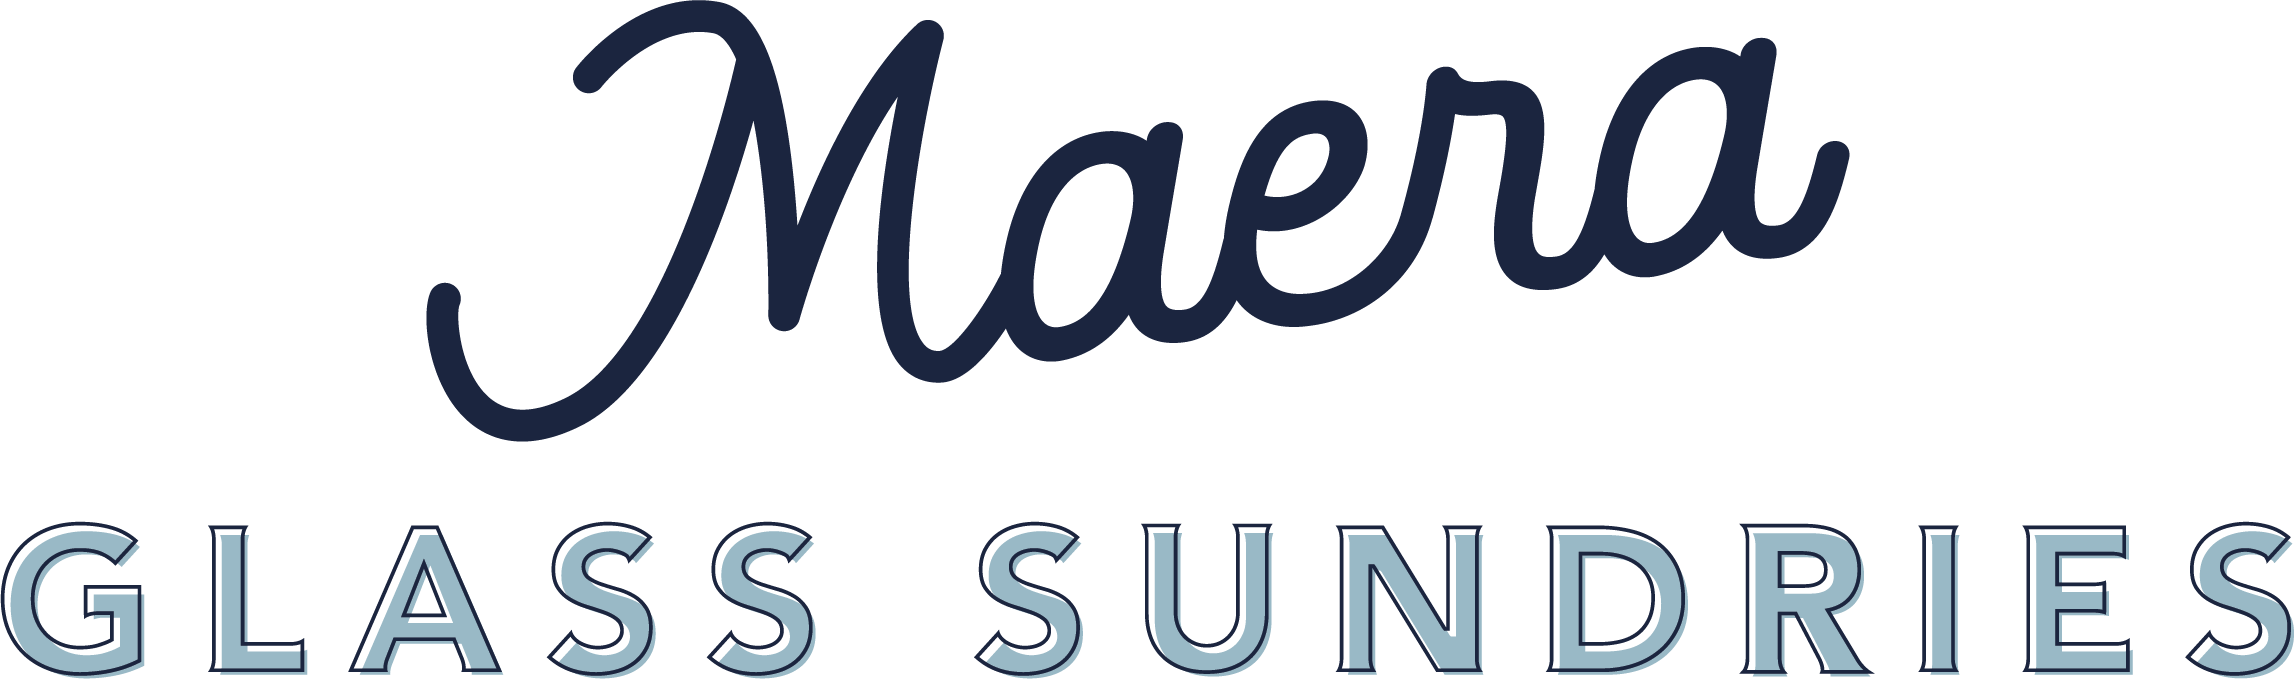 Maera Glass Sundries